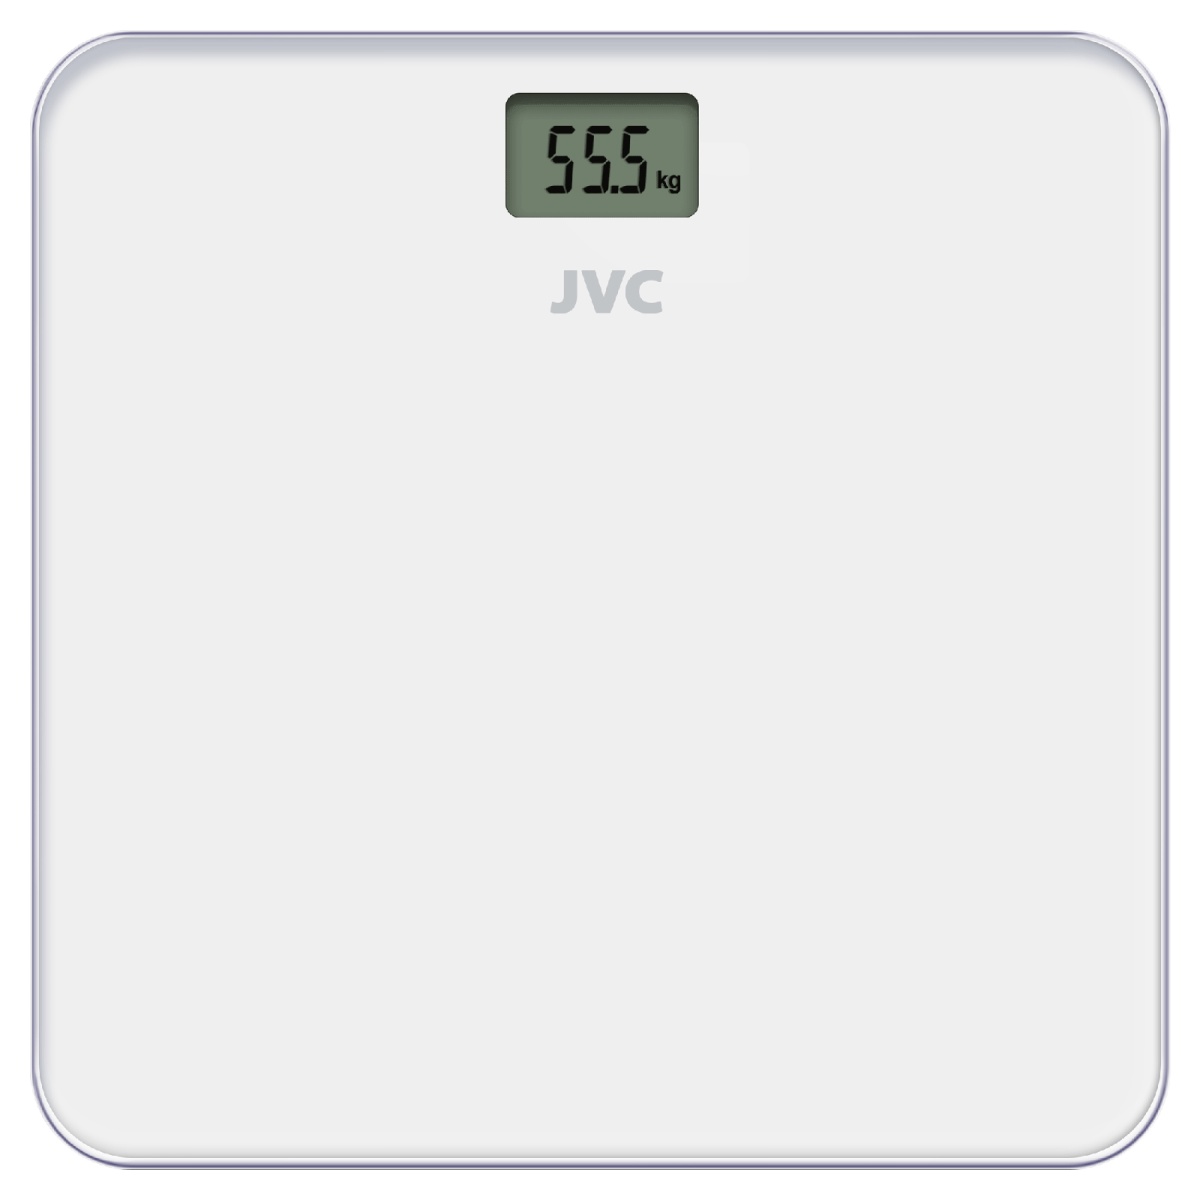  Весы напольные JVC JBS-001 стеклянные в Мелитополе, цены, фото .